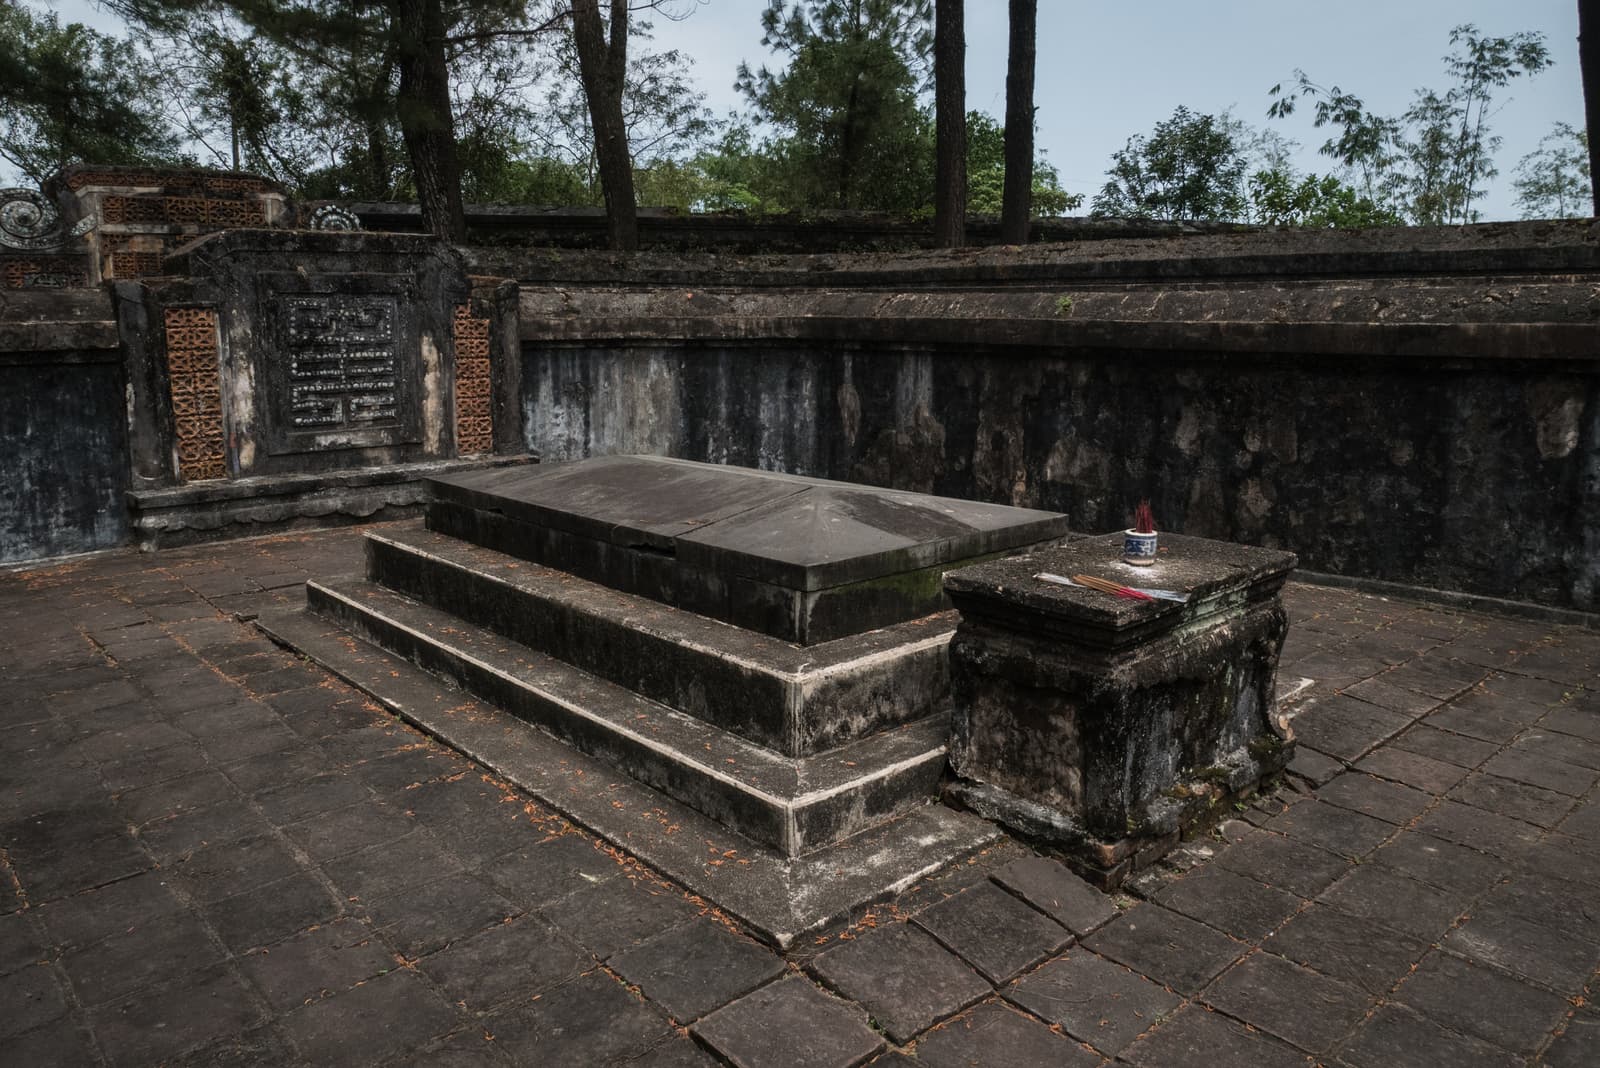 Tomb of Tự Đức, Huế, Thừa Thiên-Huế Province, Vietnam